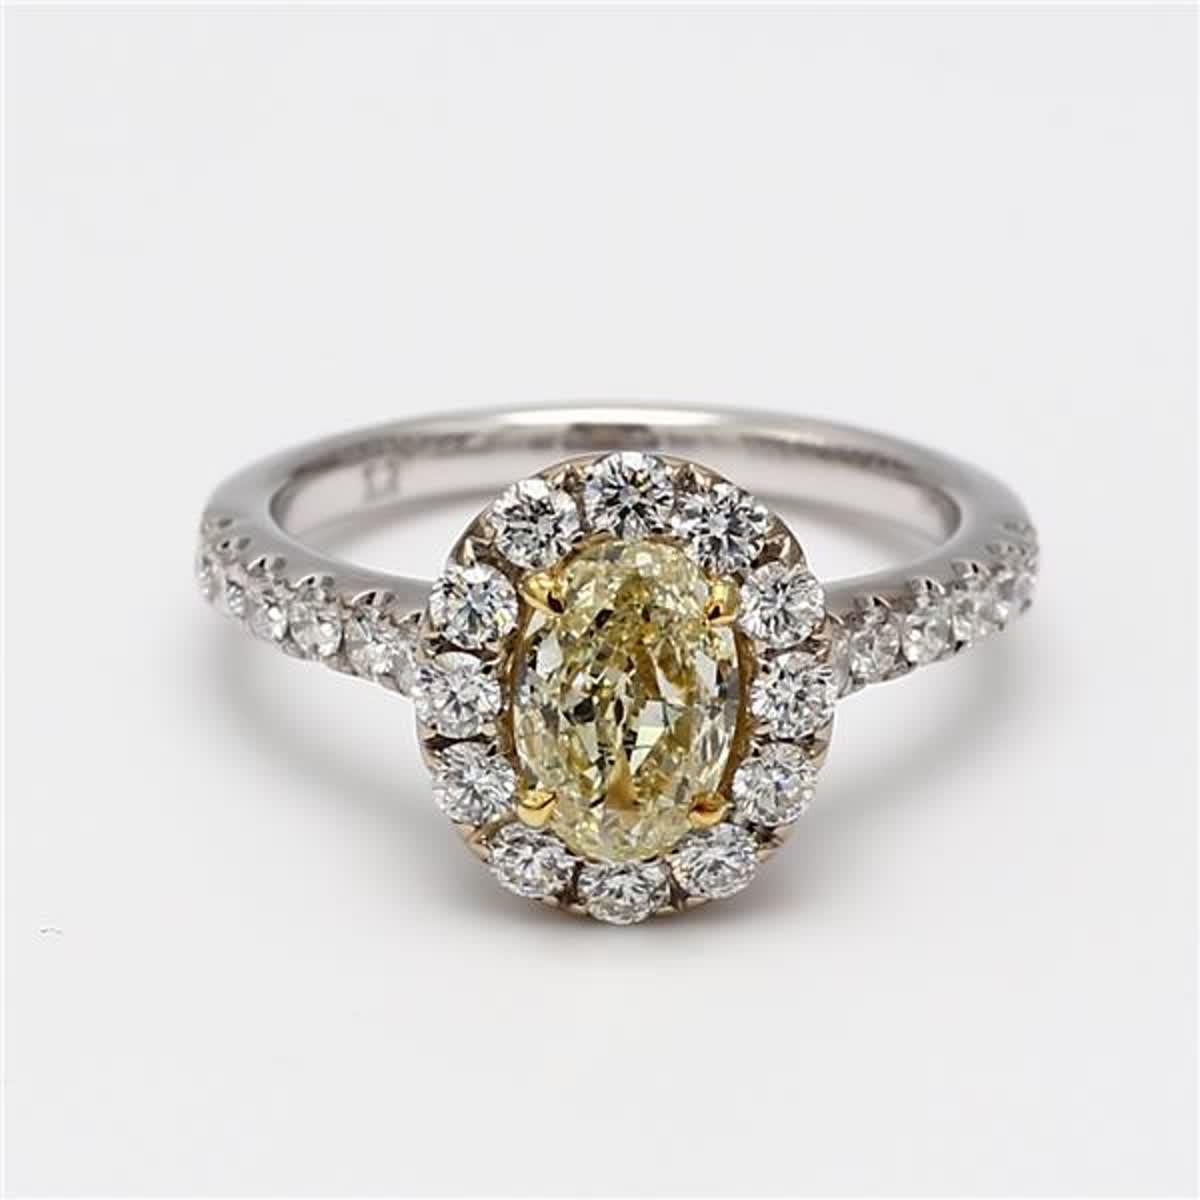 Der klassische GIA-zertifizierte Diamantring von RareGemWorld. Montiert in einer schönen Fassung aus 18K Gelb- und Weißgold mit einem natürlichen gelben Diamanten im Ovalschliff. Der gelbe Diamant ist von kleinen runden weißen Naturdiamanten